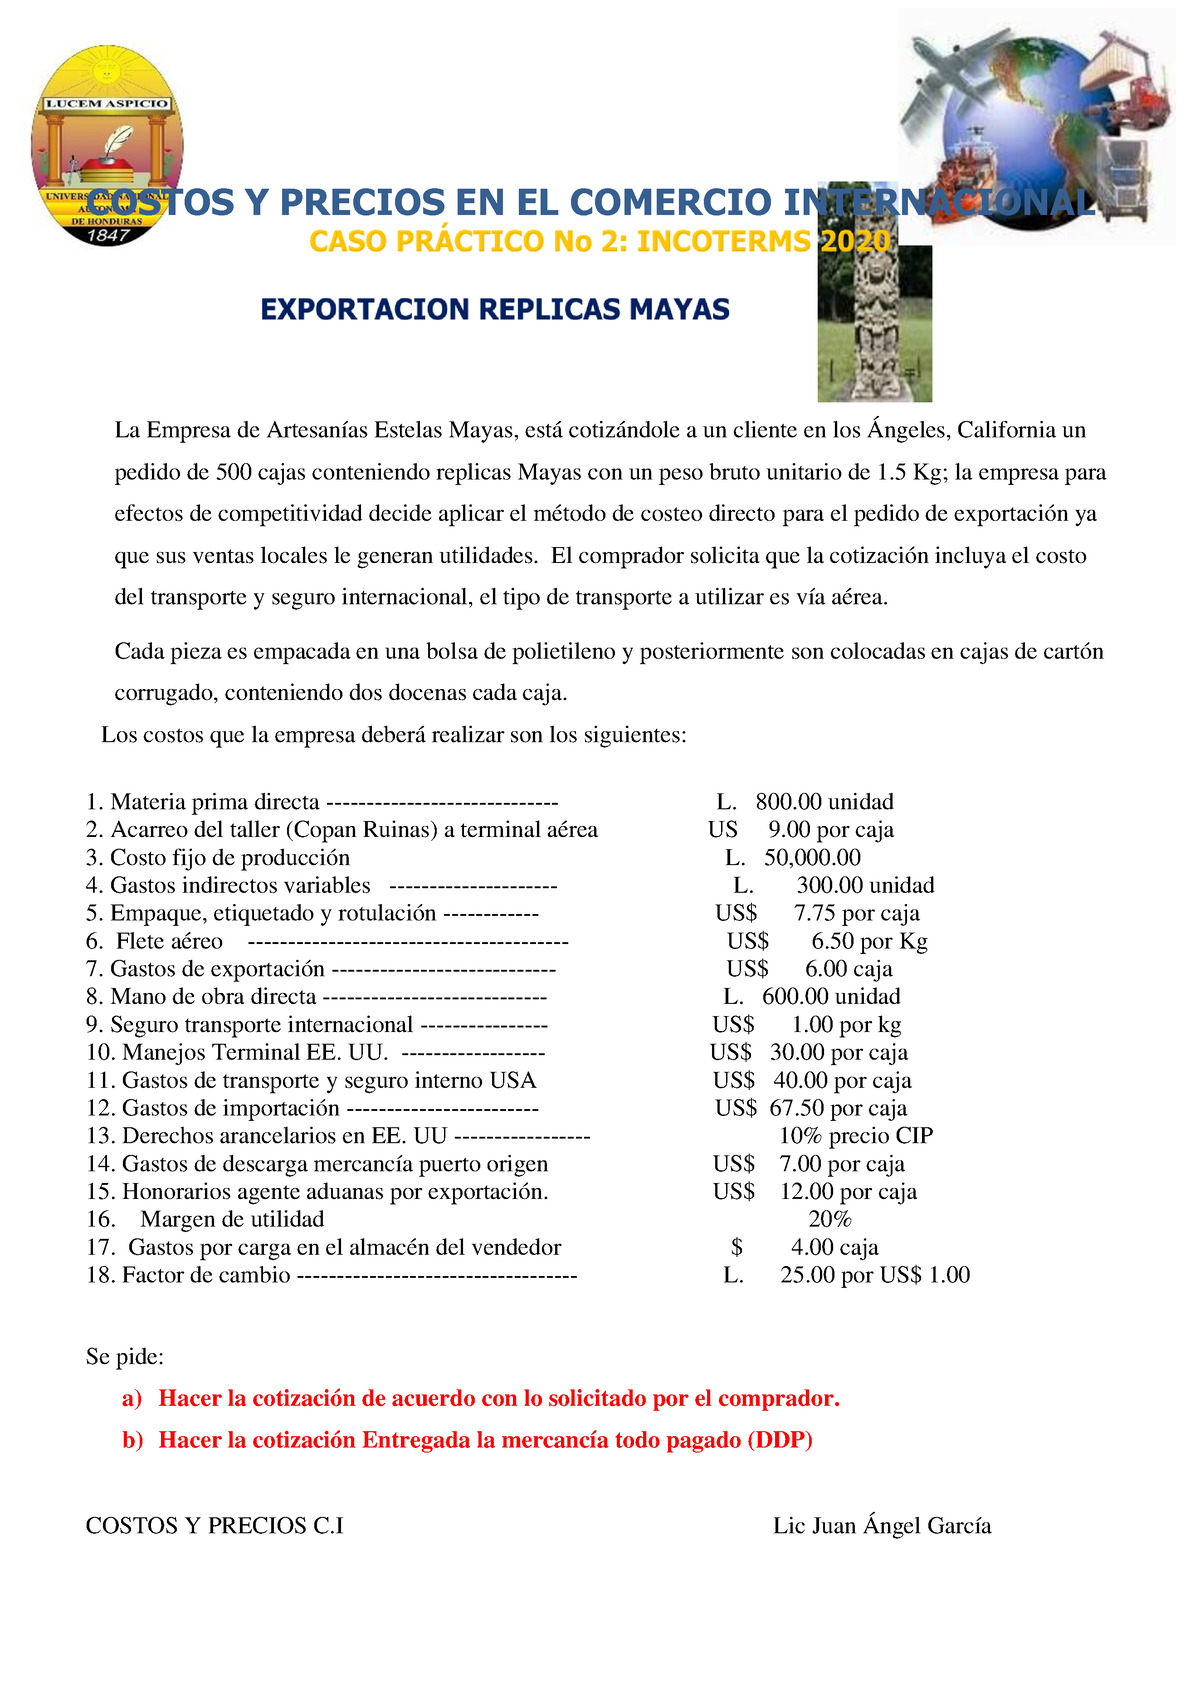 Caso Practico 2 Incoterms Costos Y Precios C Lic Juan Ángel García Costos Y Precios En El 9660